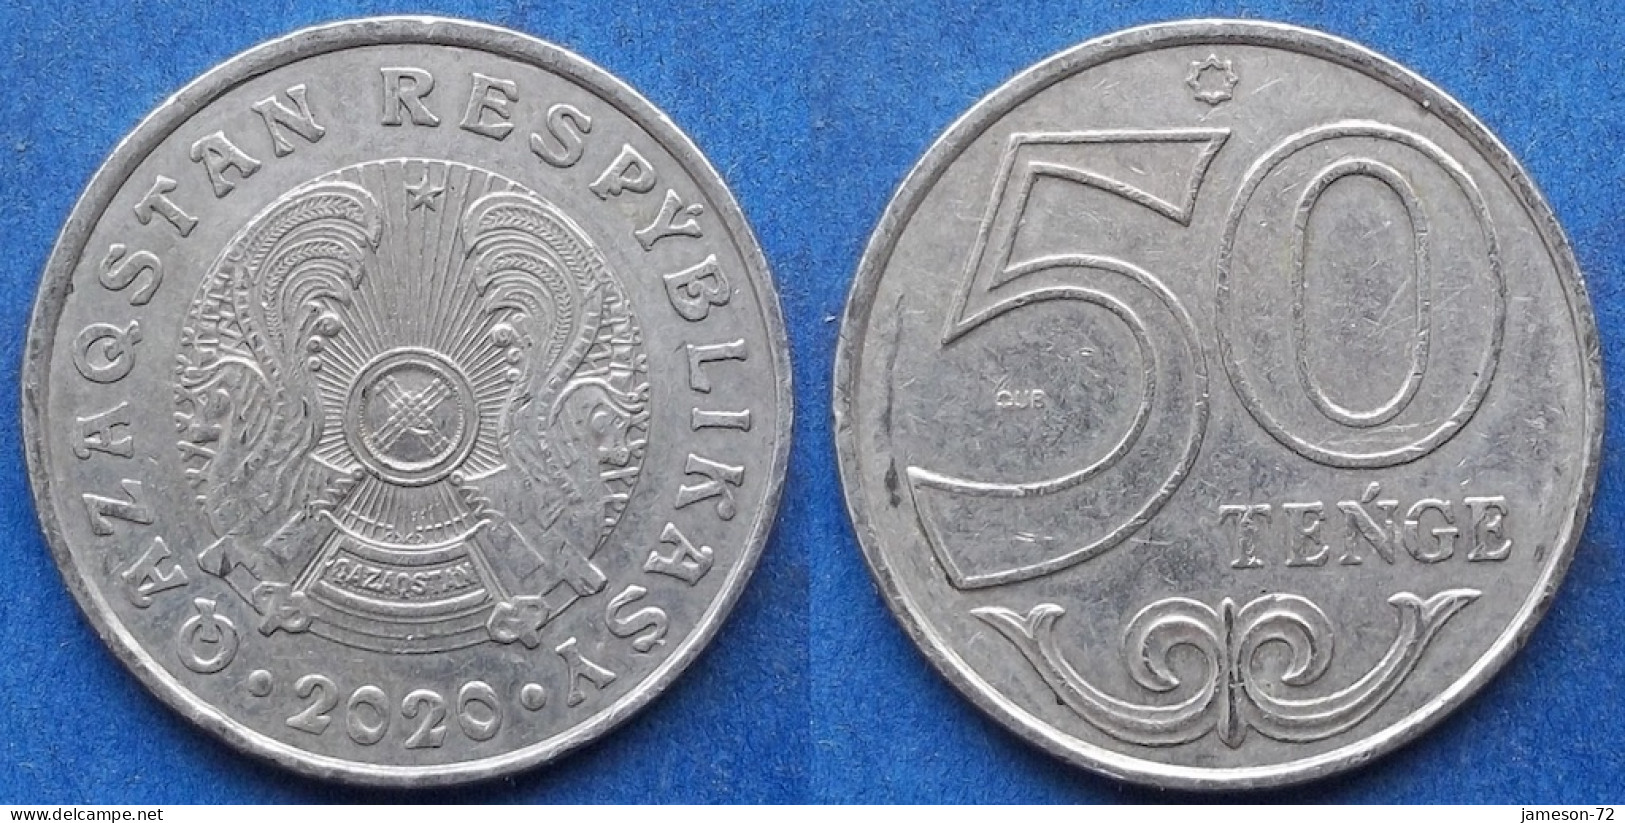 KAZAKHSTAN - 50 Tenge 2020 Independent Republic (1991) - Edelweiss Coins - Kasachstan